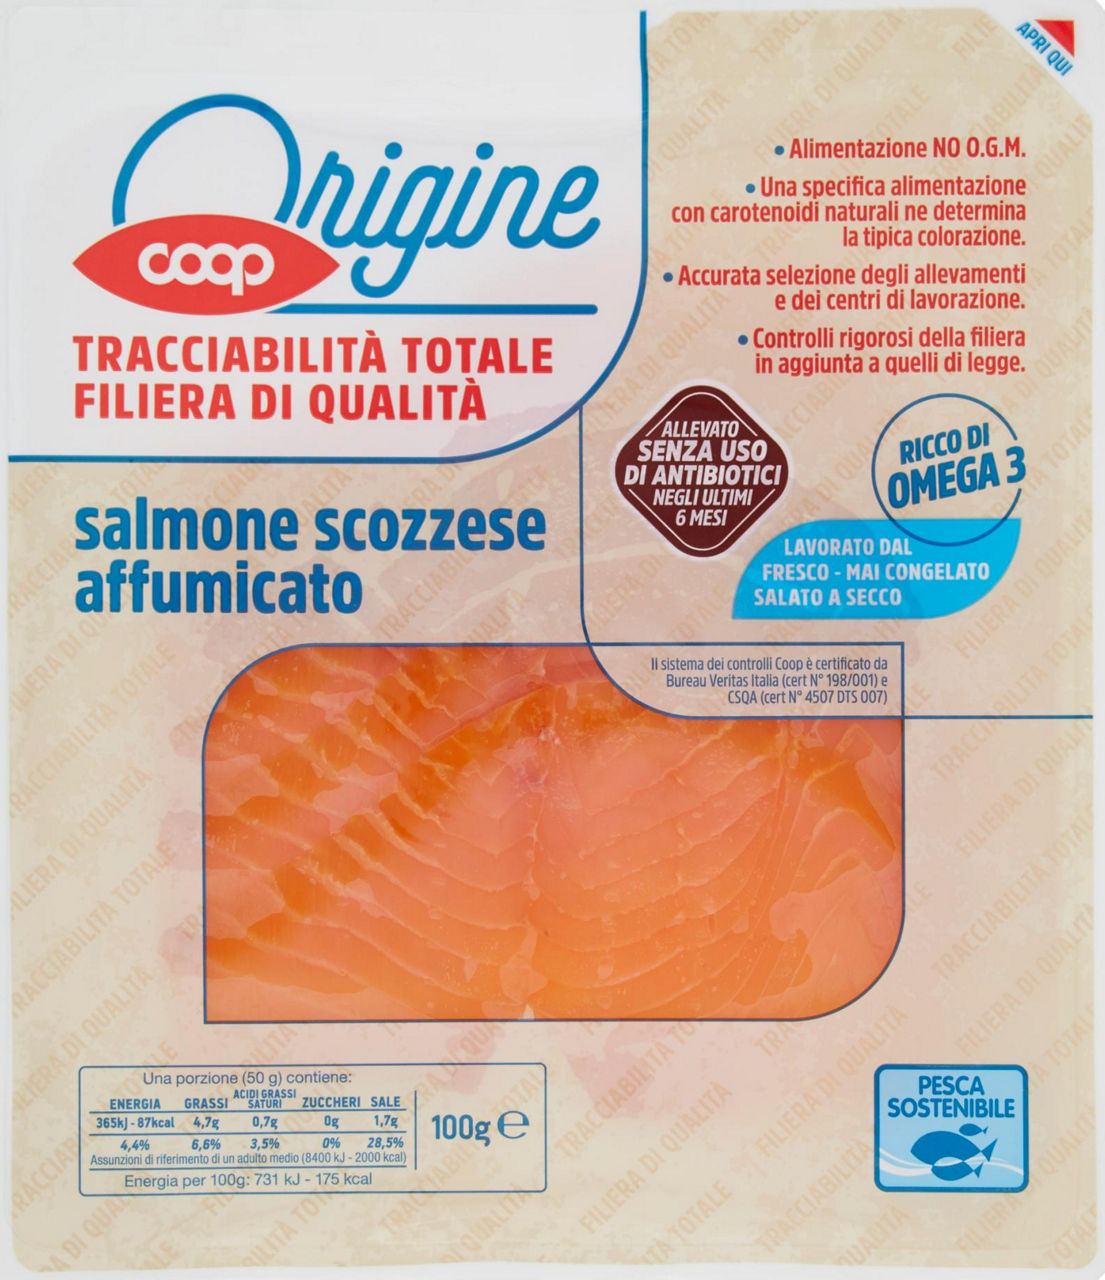 Salmone scozzese affumicato all. s/antib. ultimi 6m origine coop g 100